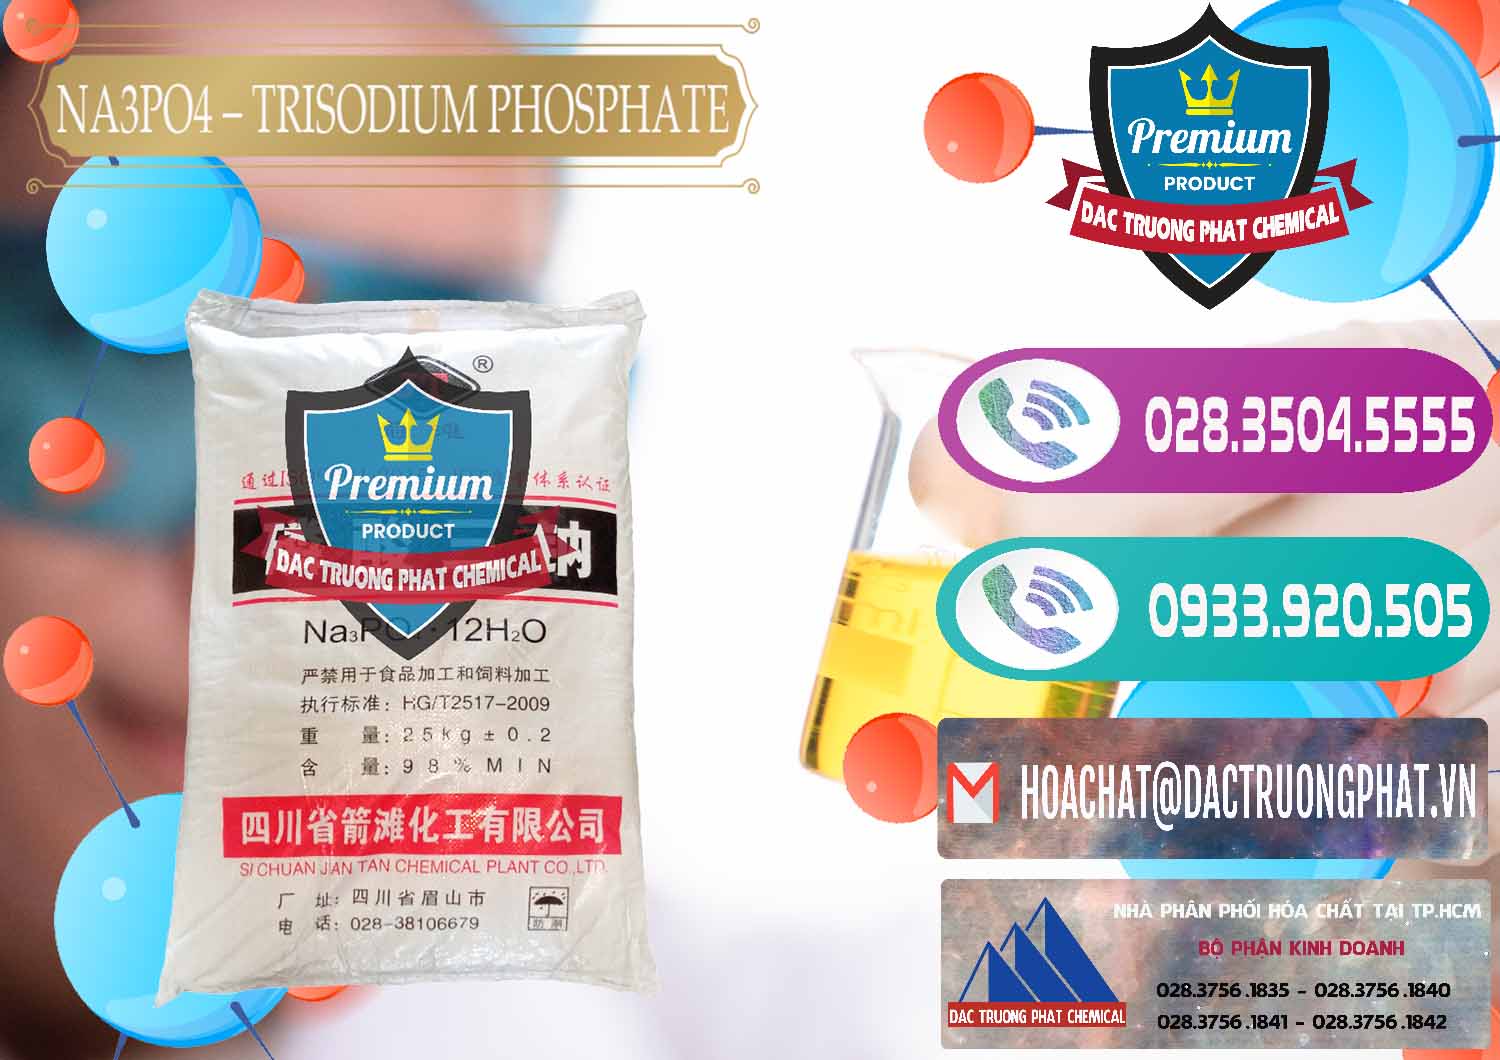 Cty chuyên bán và cung cấp Na3PO4 – Trisodium Phosphate Trung Quốc China JT - 0102 - Cty kinh doanh và cung cấp hóa chất tại TP.HCM - hoachatxulynuoc.com